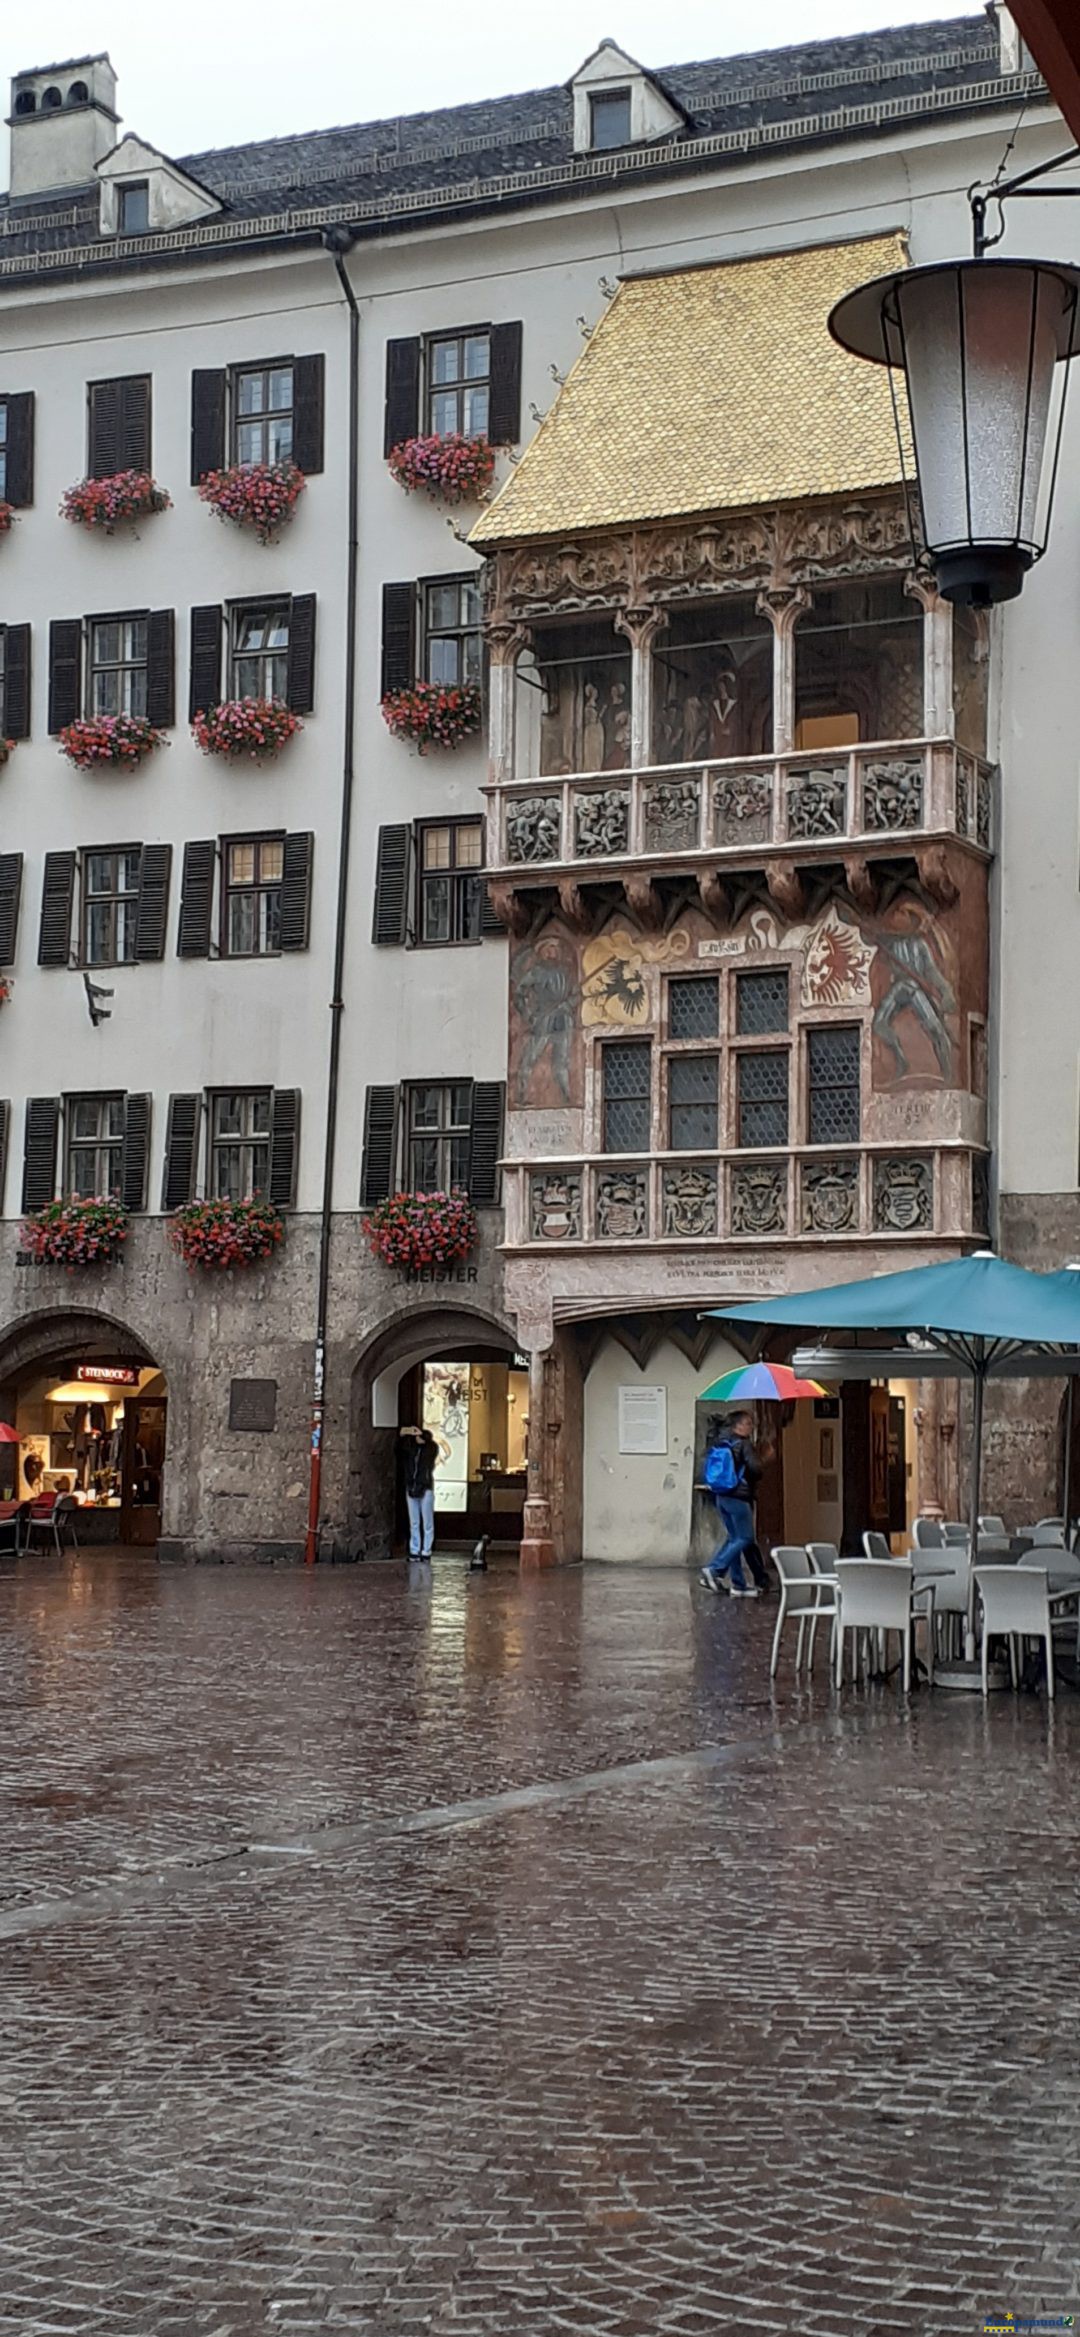 El centro de Innsbruck